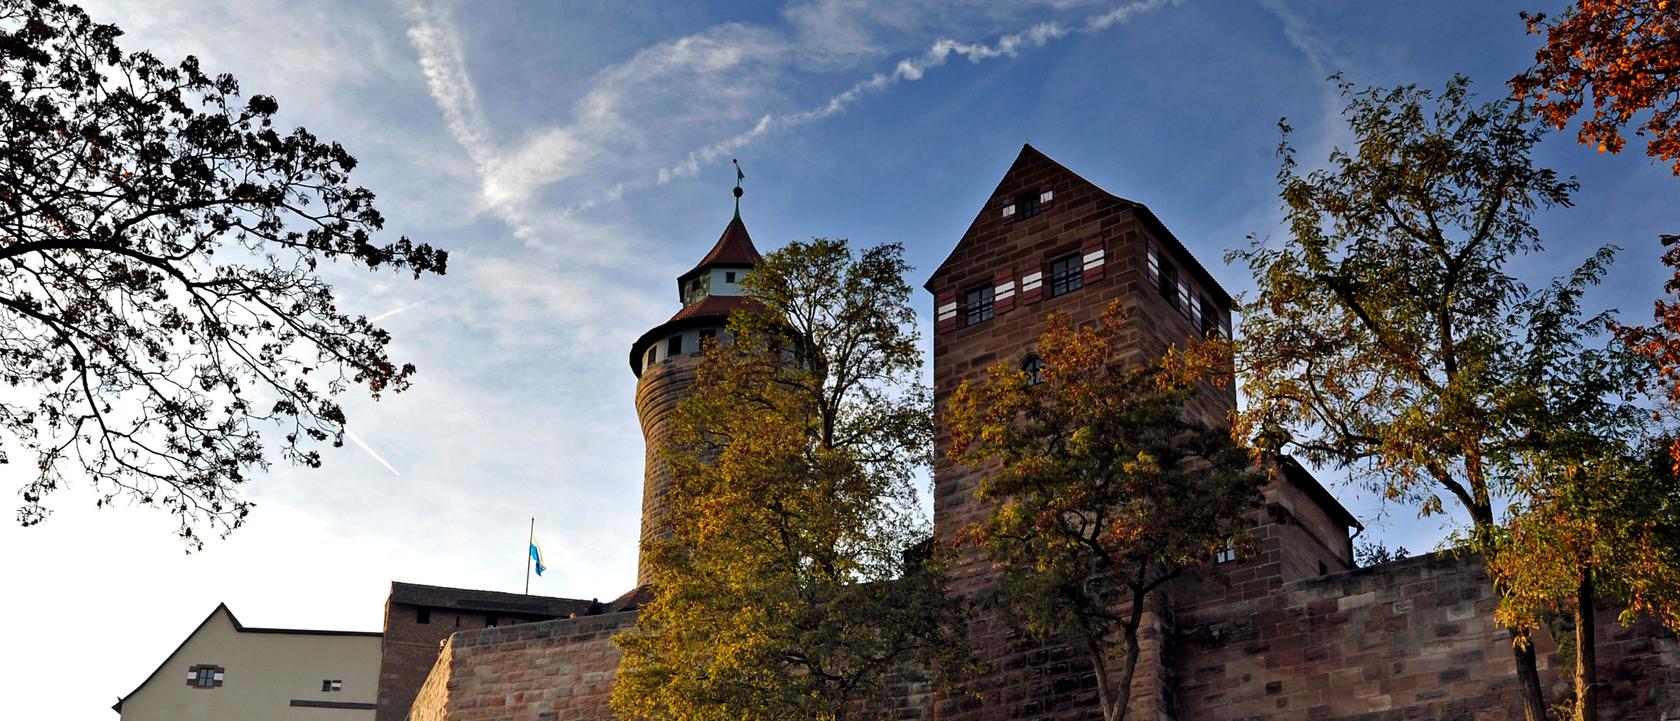 Nürnberg pumpt 750.000 Euro in seinen Tourismusfonds